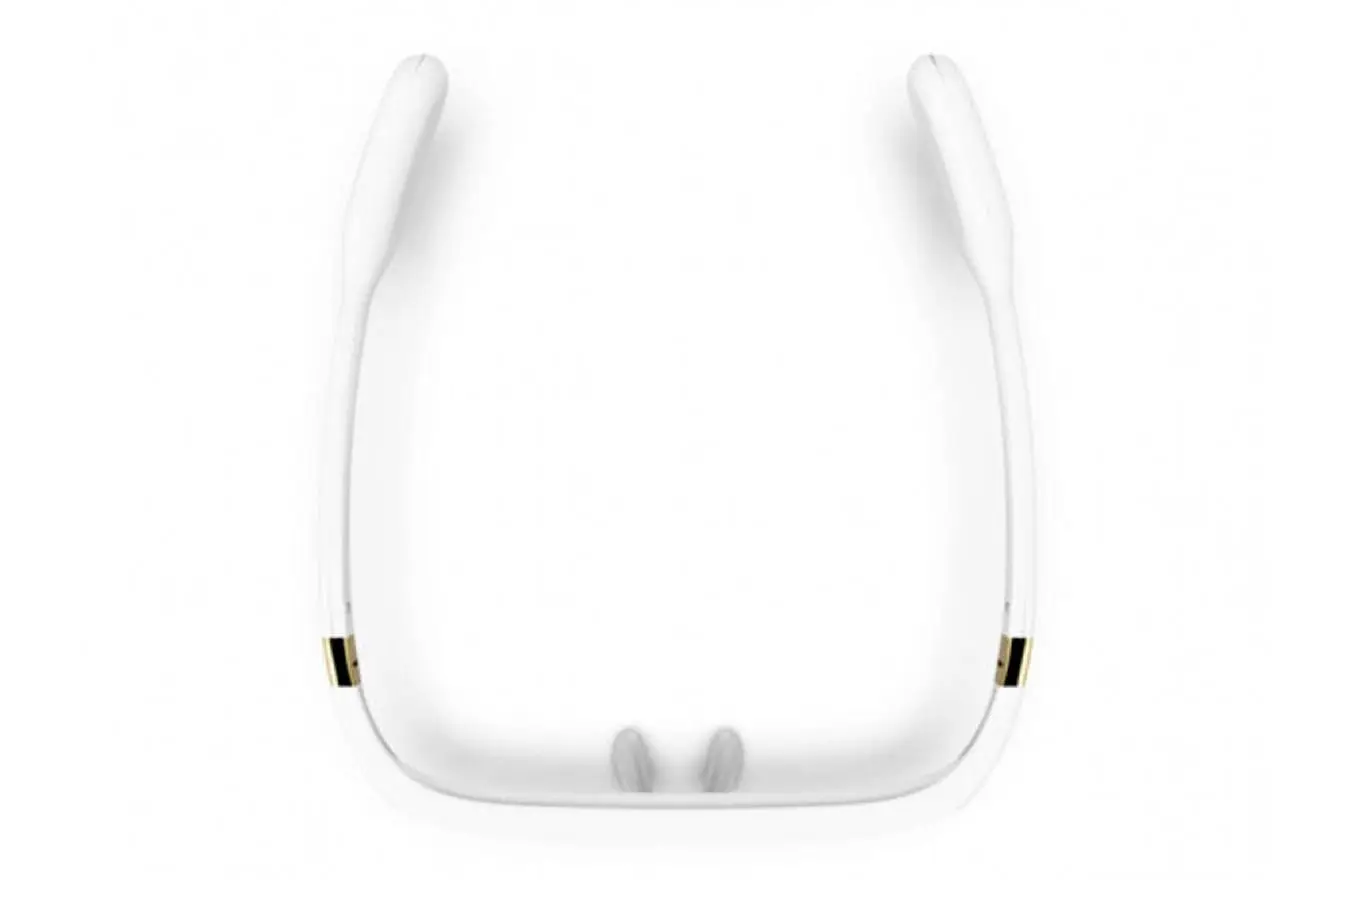 Очки для светотерапии Pegasi Smart Sleep Glasses II (white) Askona фото - 3 - большое изображение